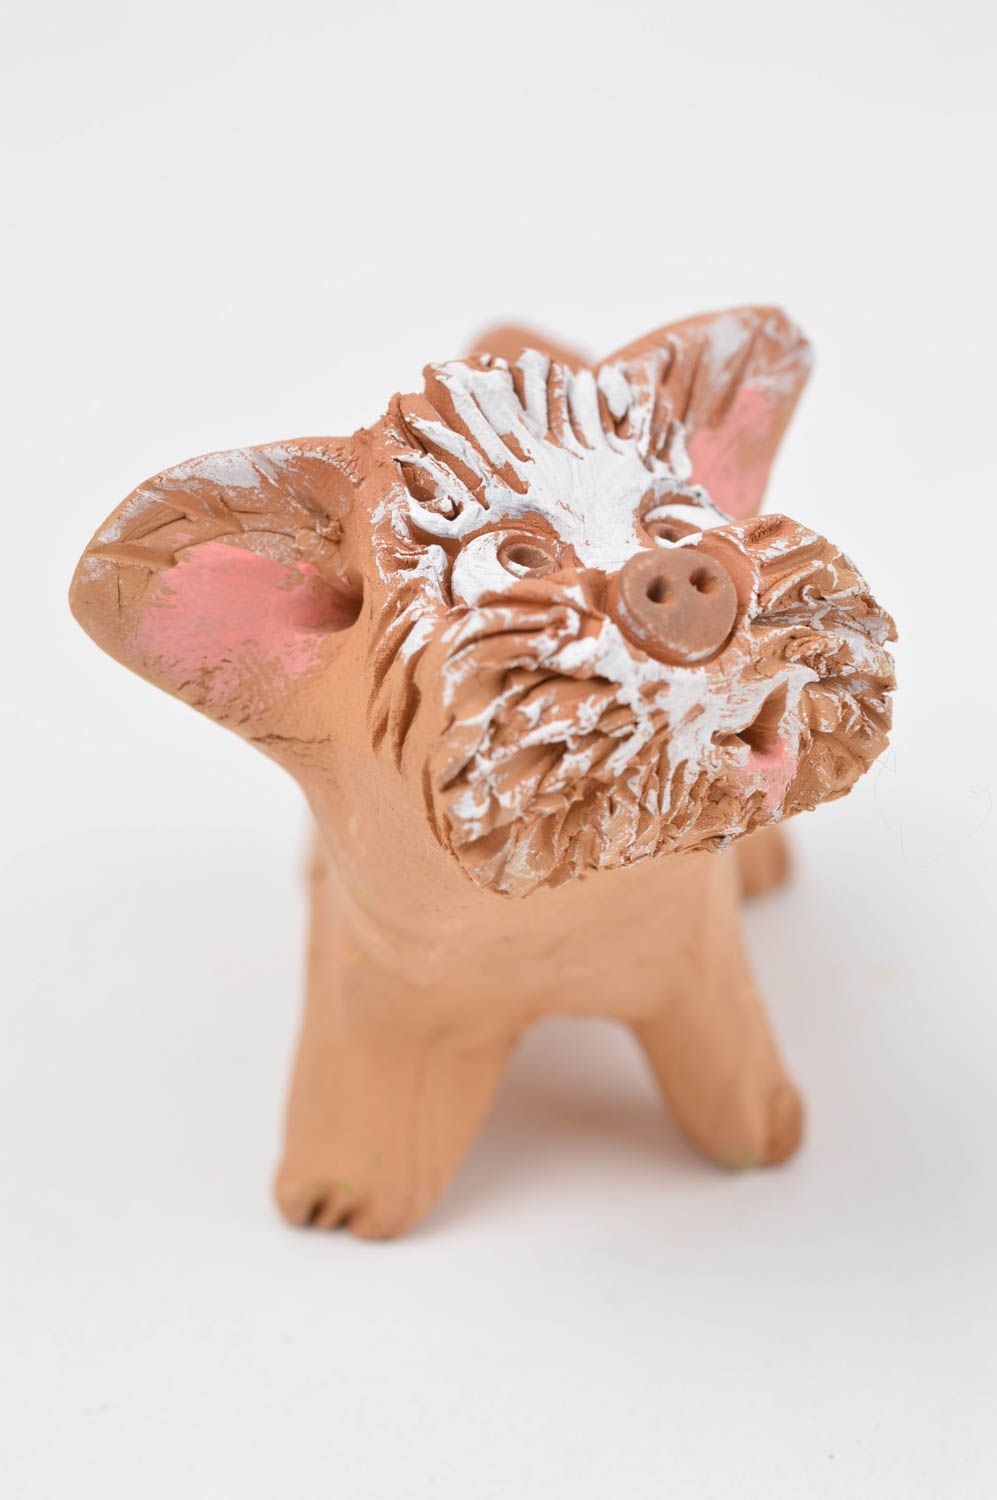 Статуэтка животного щенка ручной работы статуэтка для декора фигурка из глины фото 3